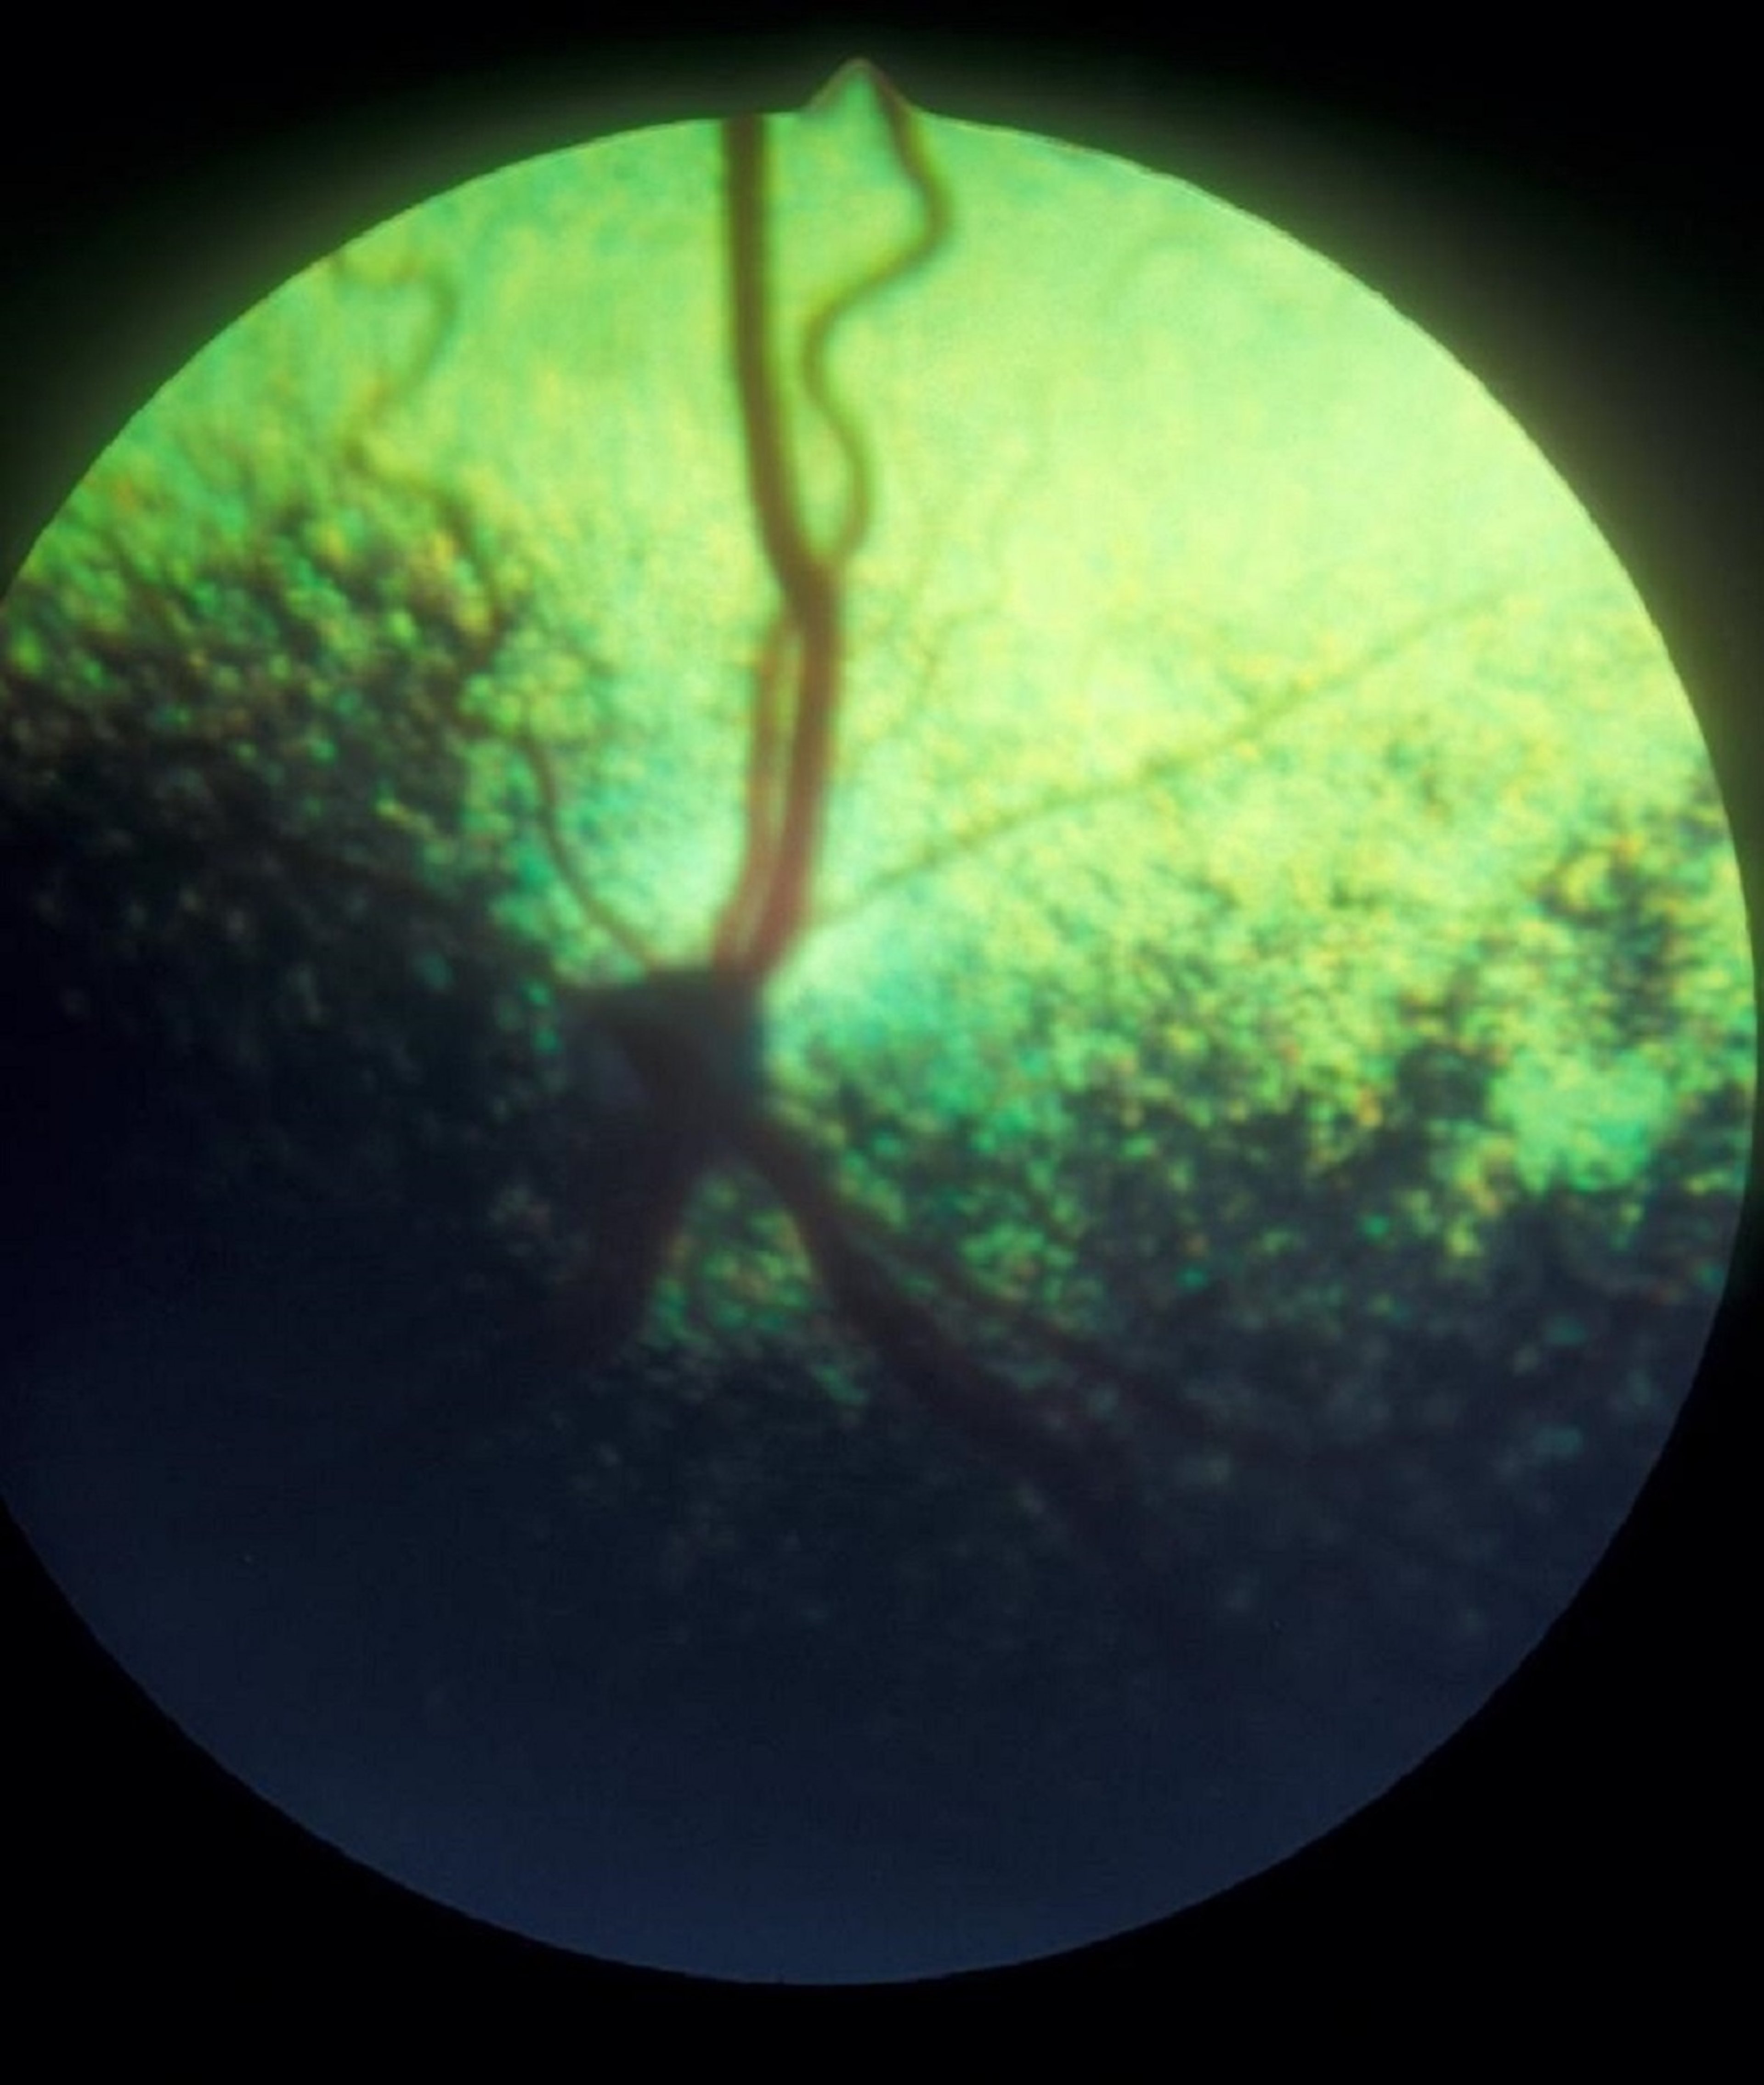 Optic nerve hypoplasia, dog